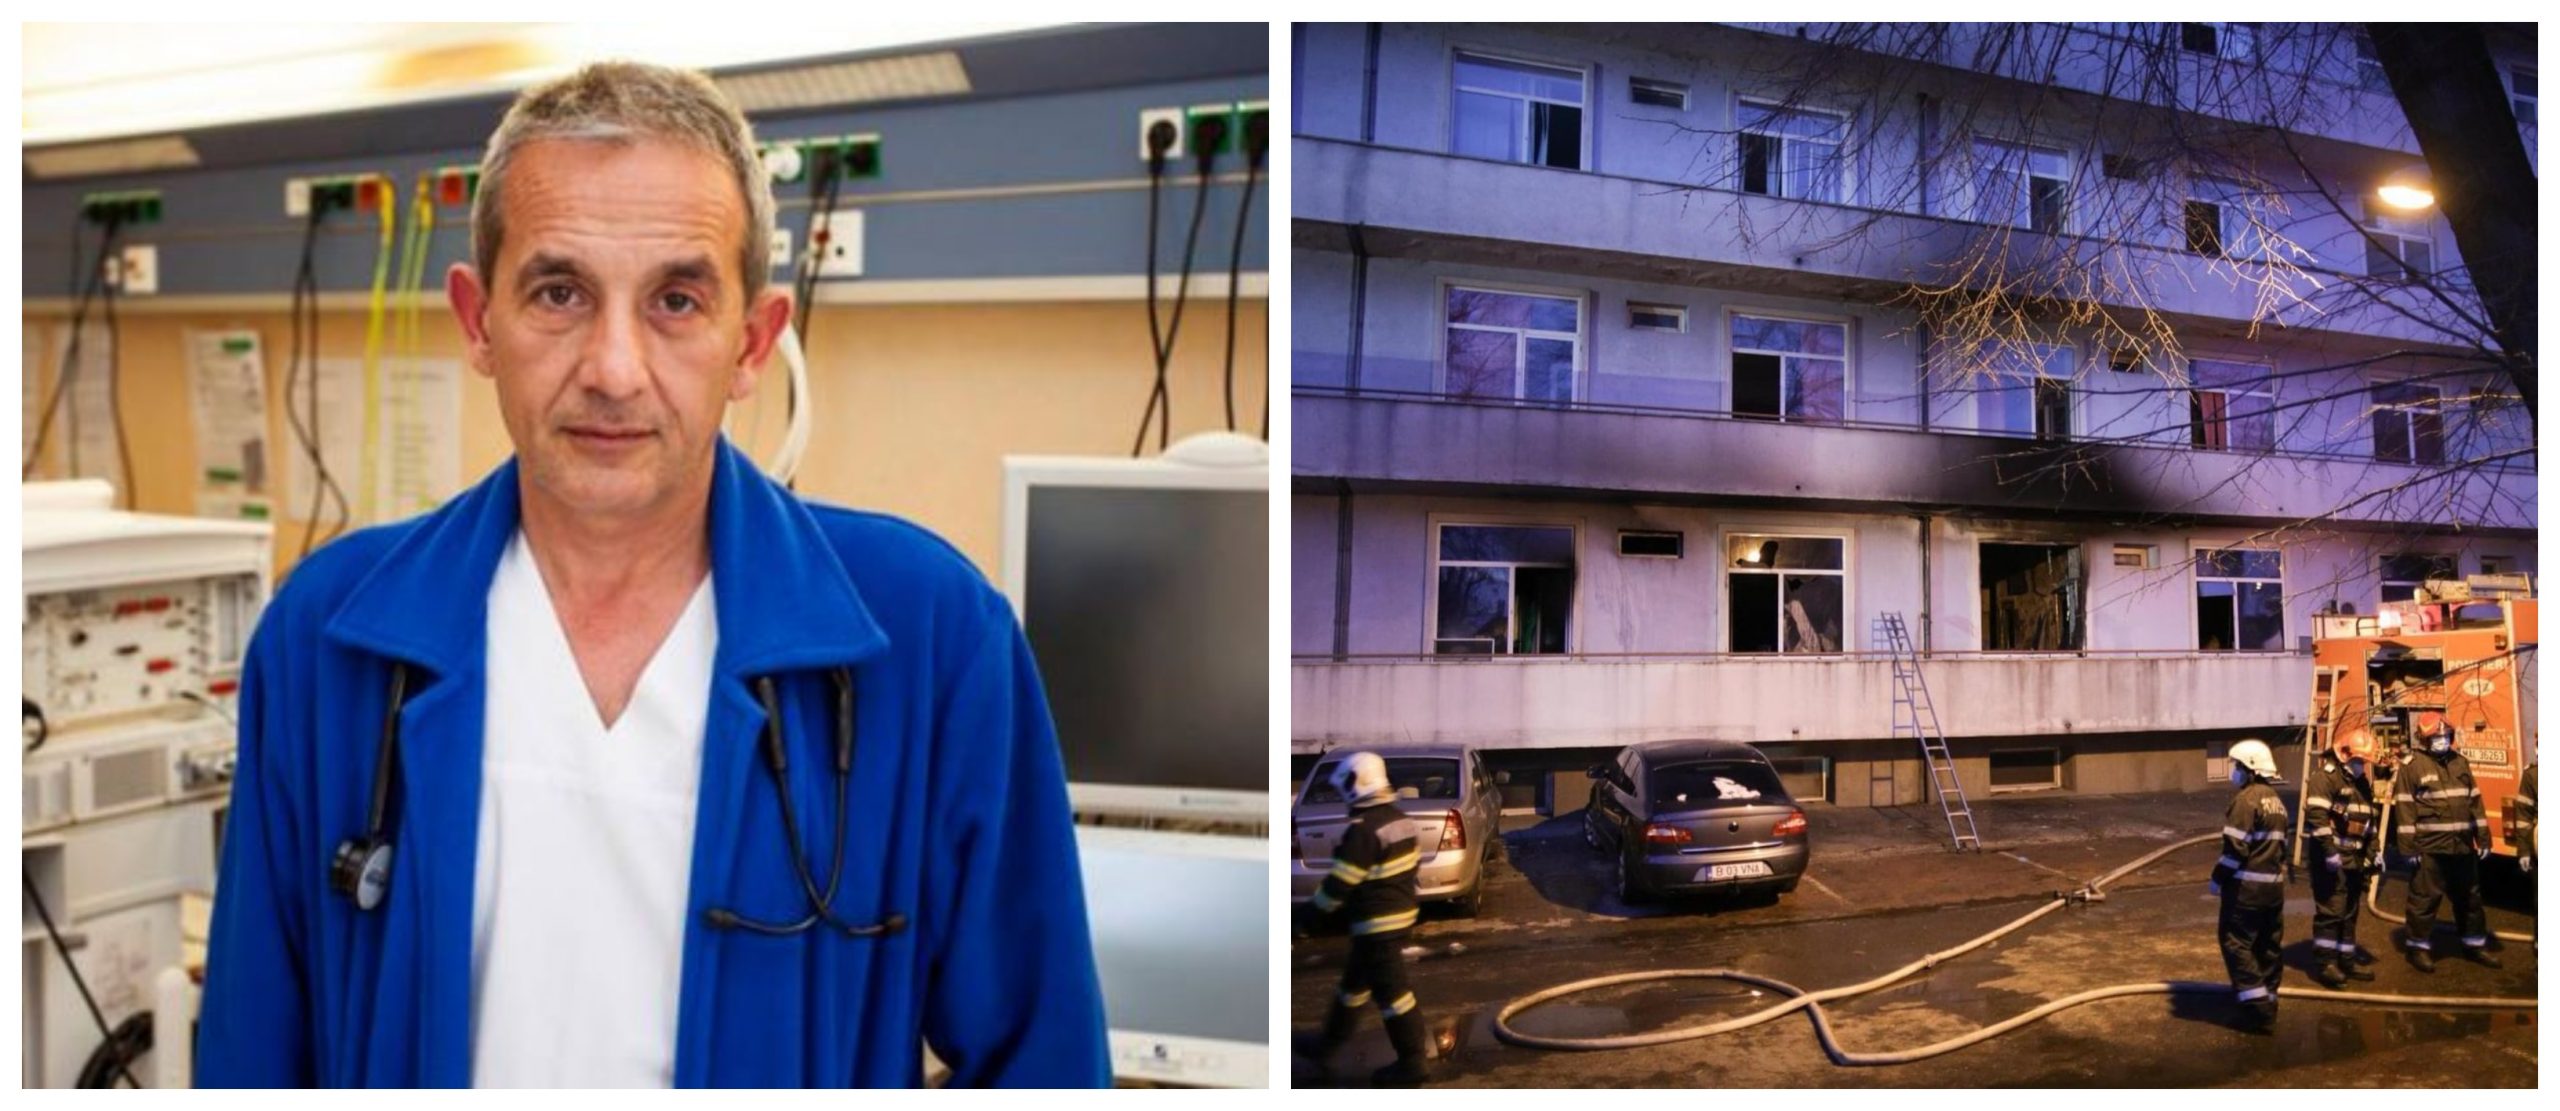 Medicul de gardă din noaptea incendiului de la Matei Balș, declarații dureroase: "Erau ţipetele pacienţilor..."